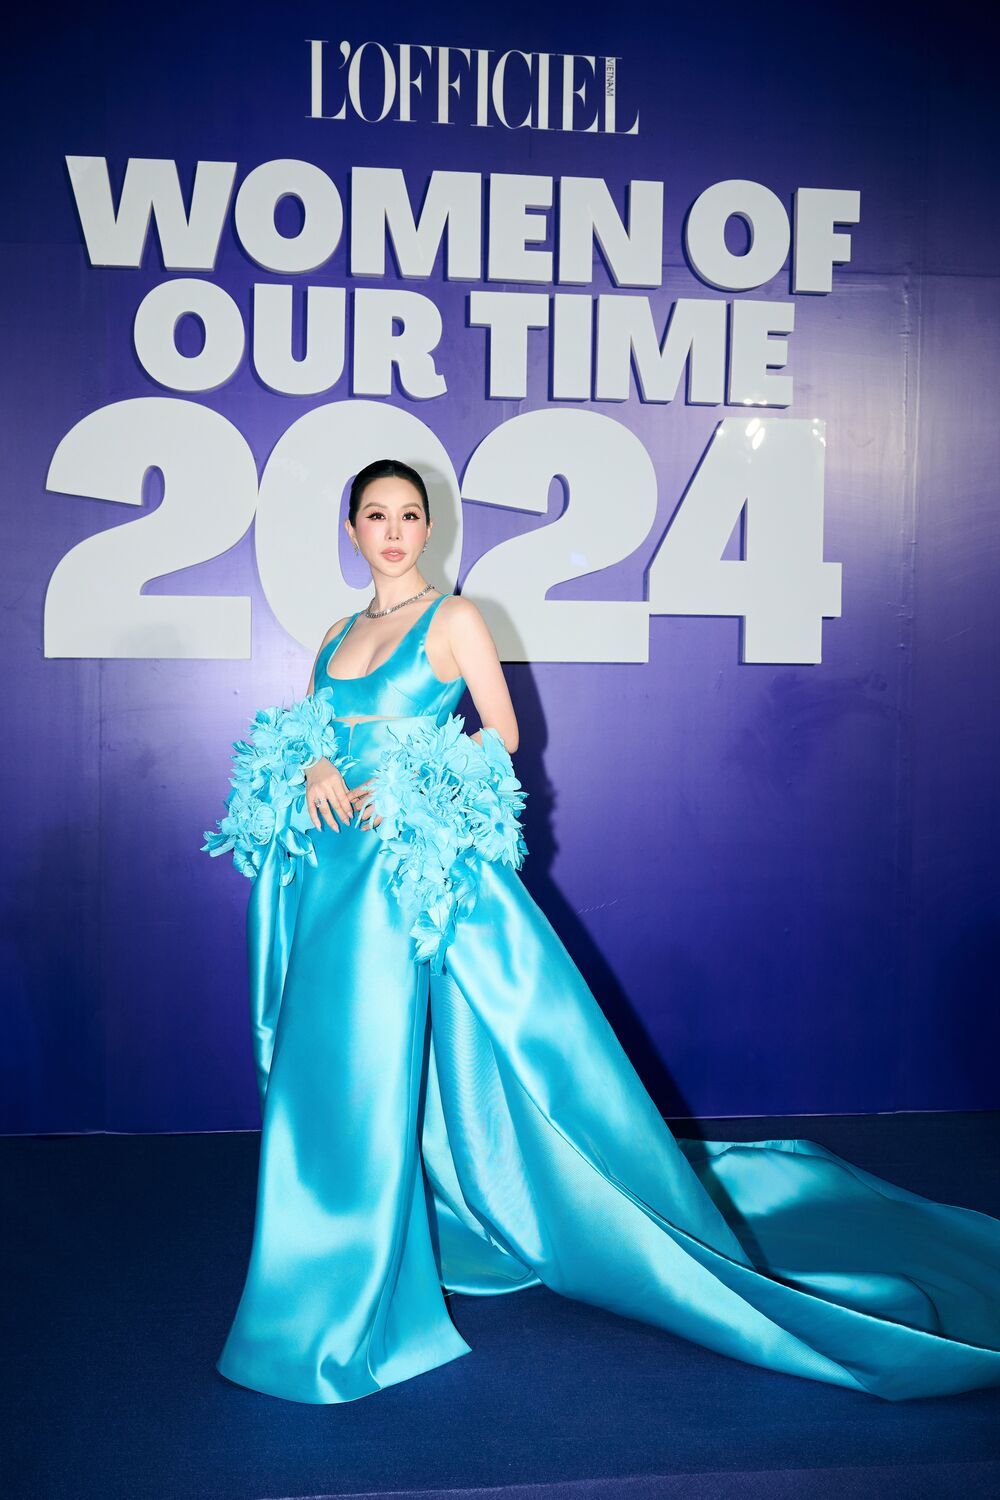 Hoa hậu Thu Hoài cùng Mỹ Tâm, Trang Pháp, Hương Giang được vinh danh Phụ nữ của thời đại - 1